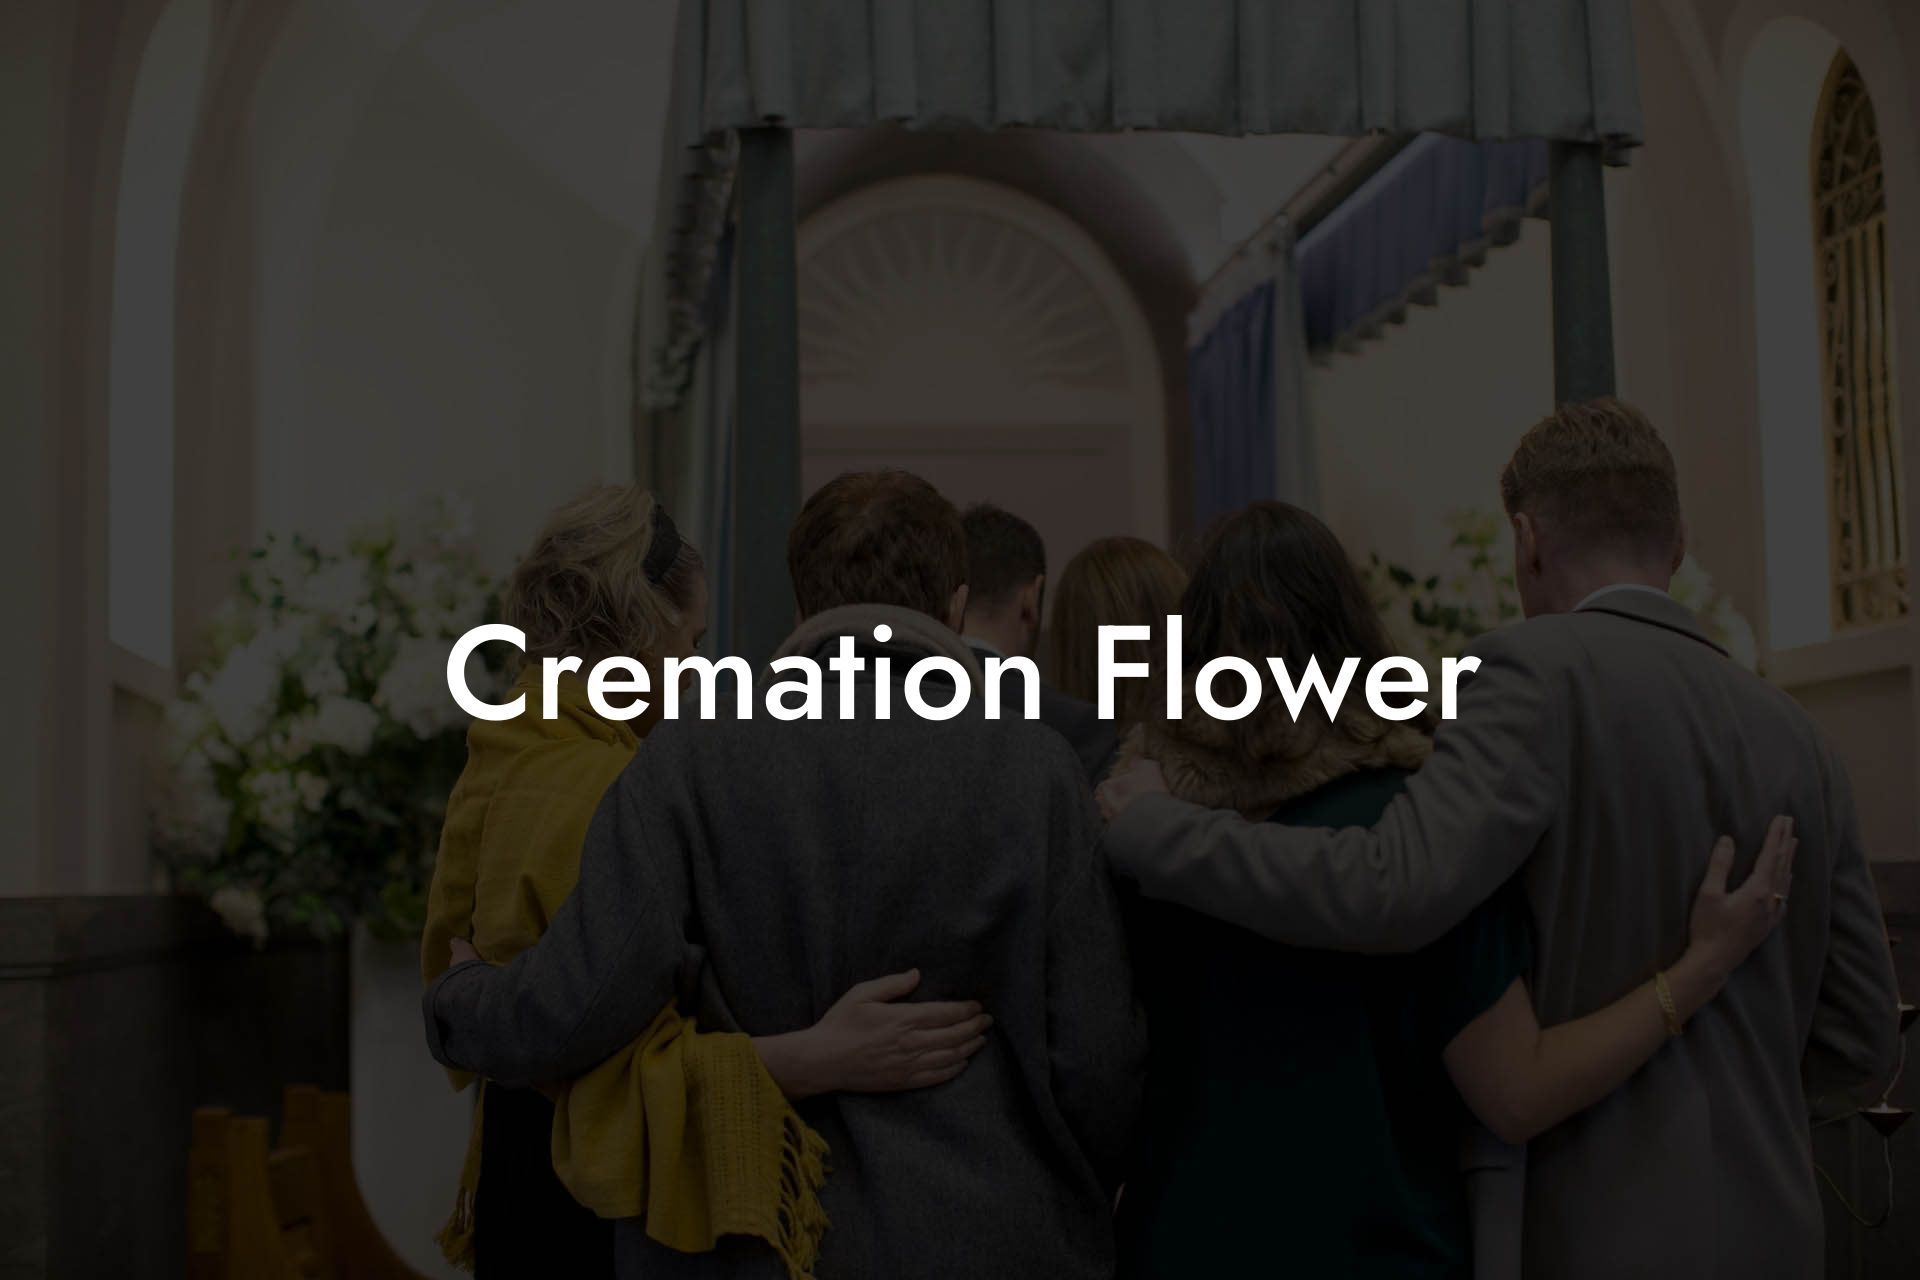 Cremation Flower